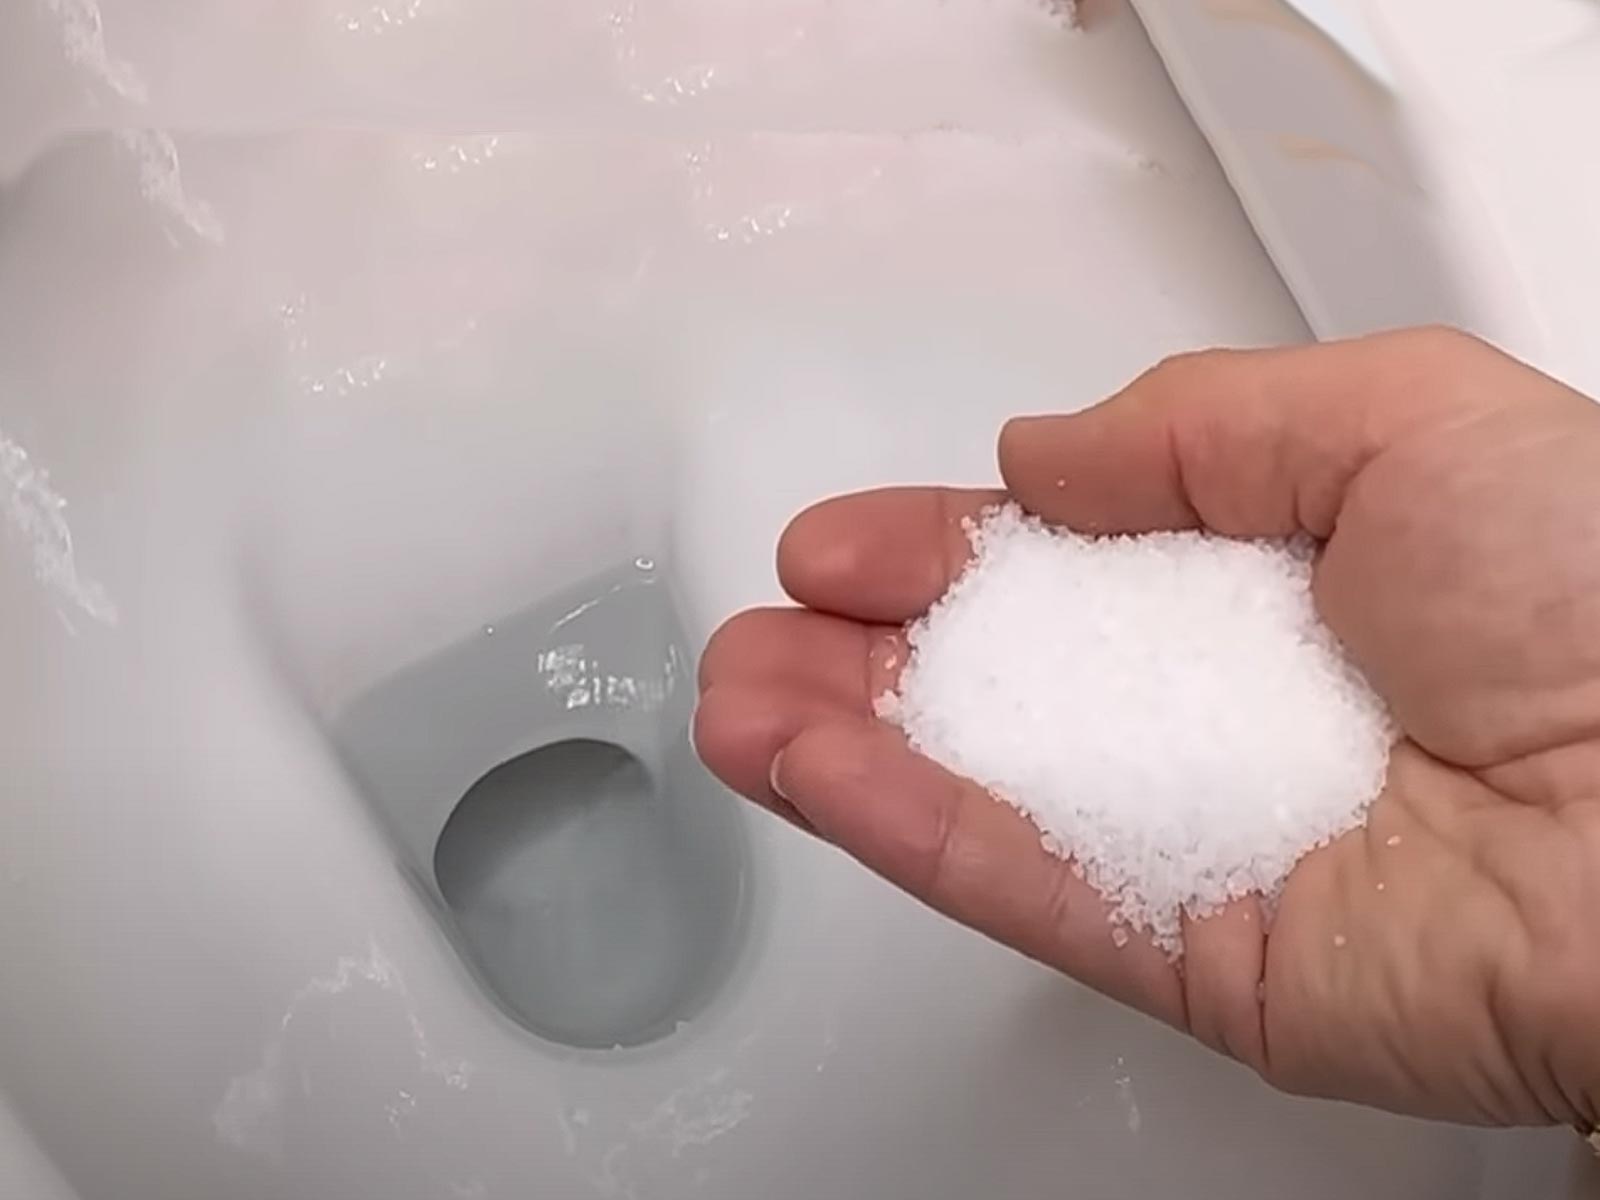 Χλωρίνη και Αλάτι: Ισχυρό καθαριστικό για την λεκάνη της τουαλέτας από άλατα και πουρί